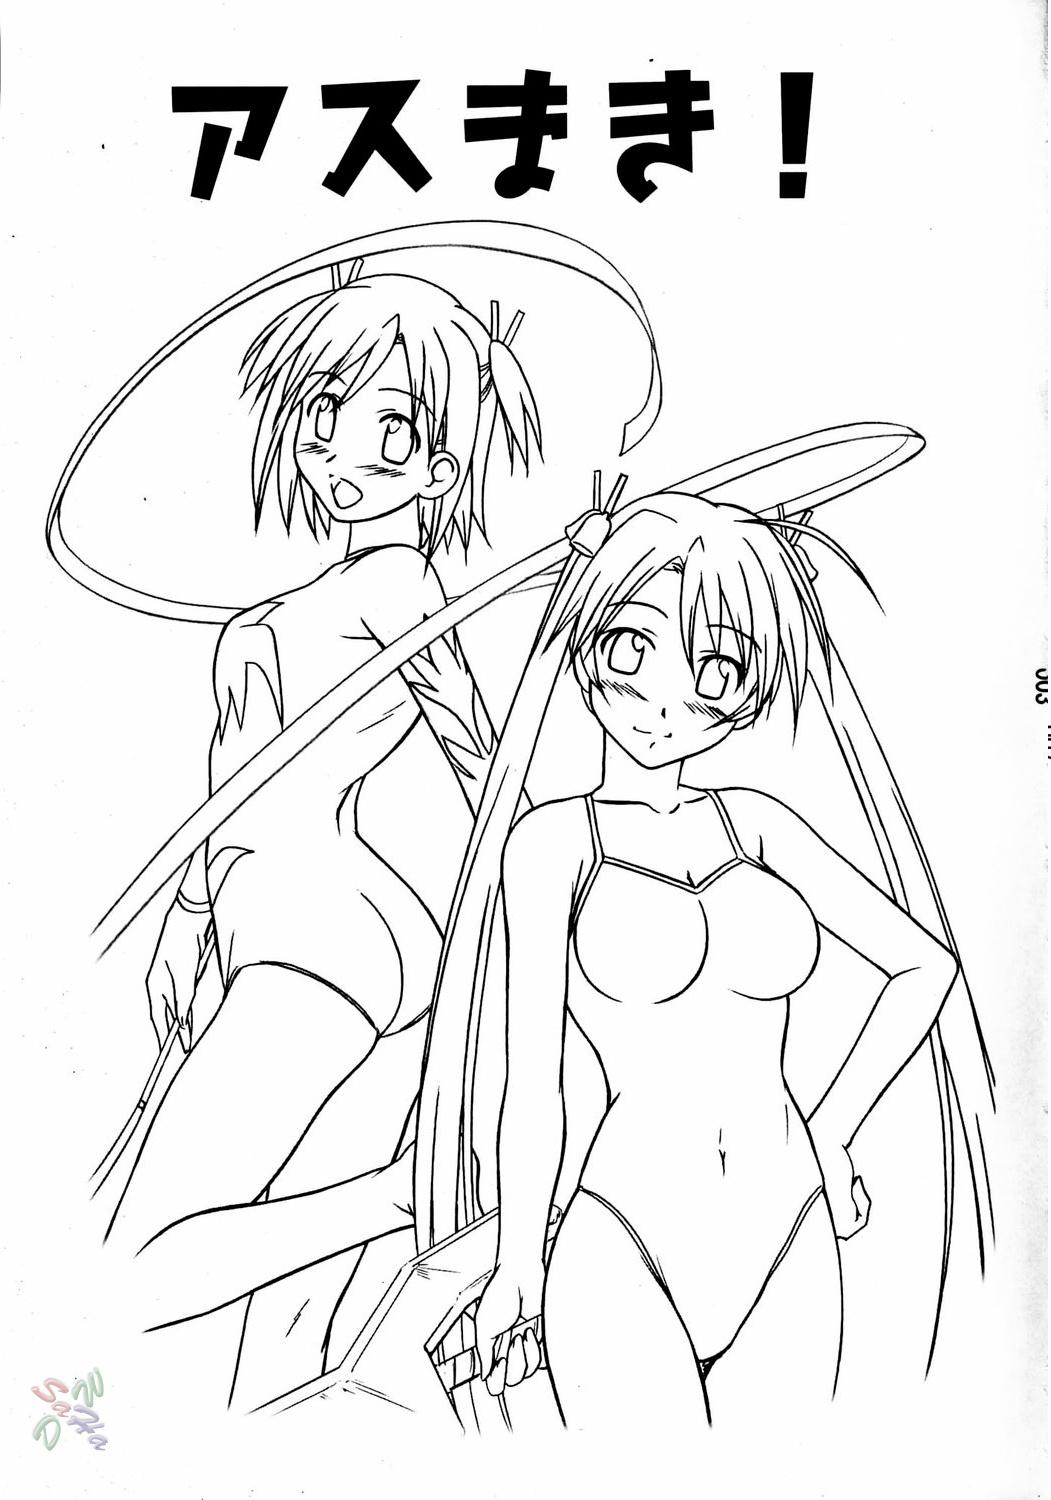 Girls Asu Maki! - Mahou sensei negima Casero - Page 2